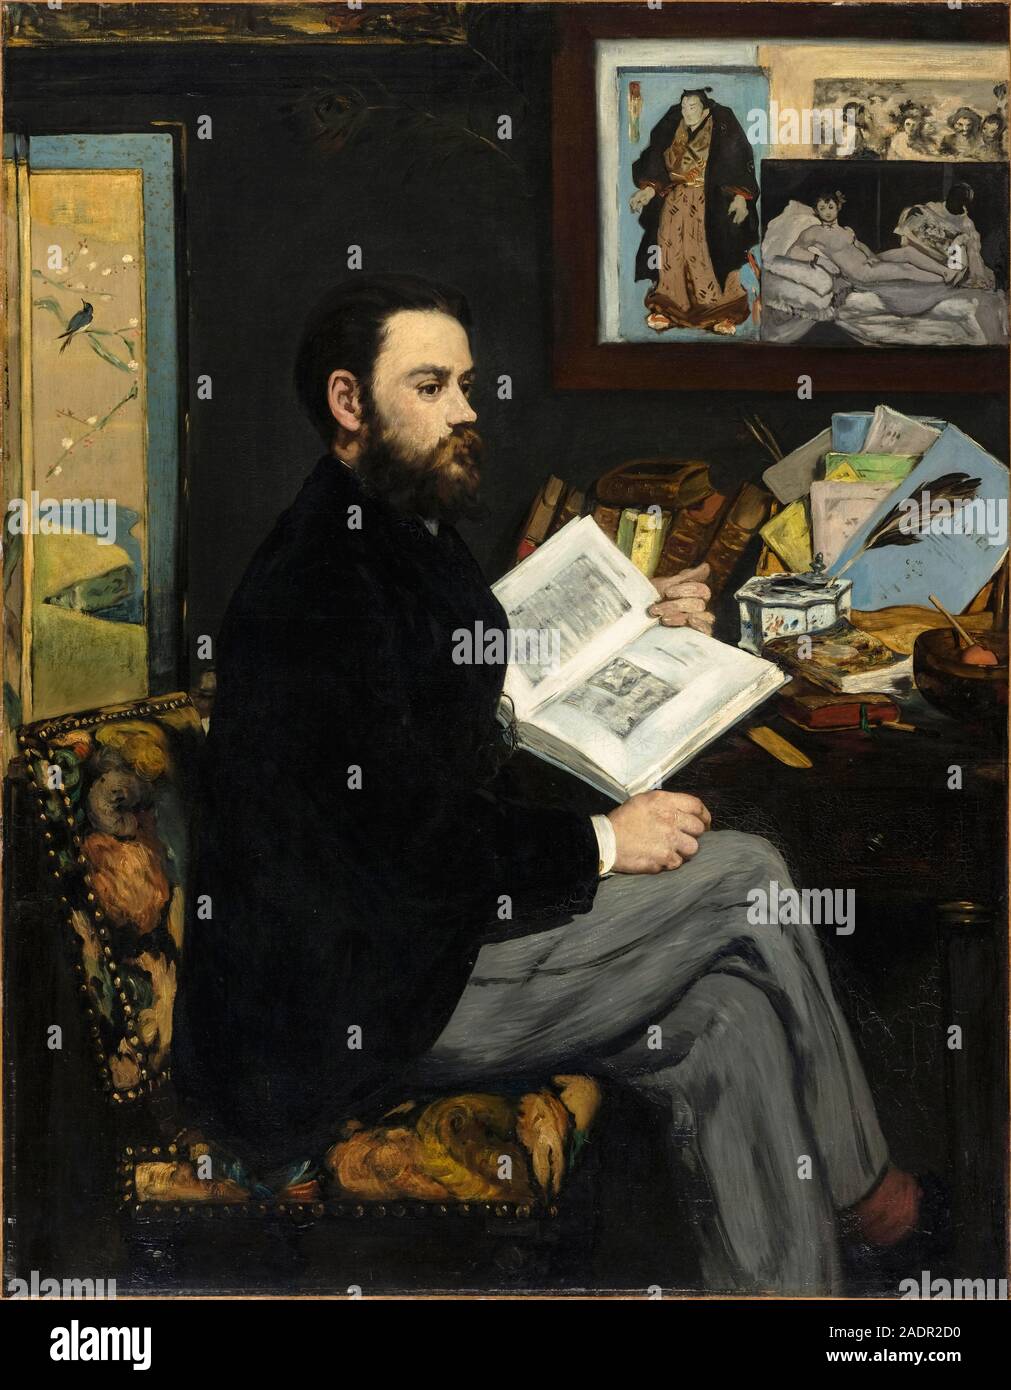 Émile Zola (1840-1902), französischer Autor und Journalist. Ölgemälde von Édouard Manet (1832-1883) im Jahre 1868 gemalt. Stockfoto